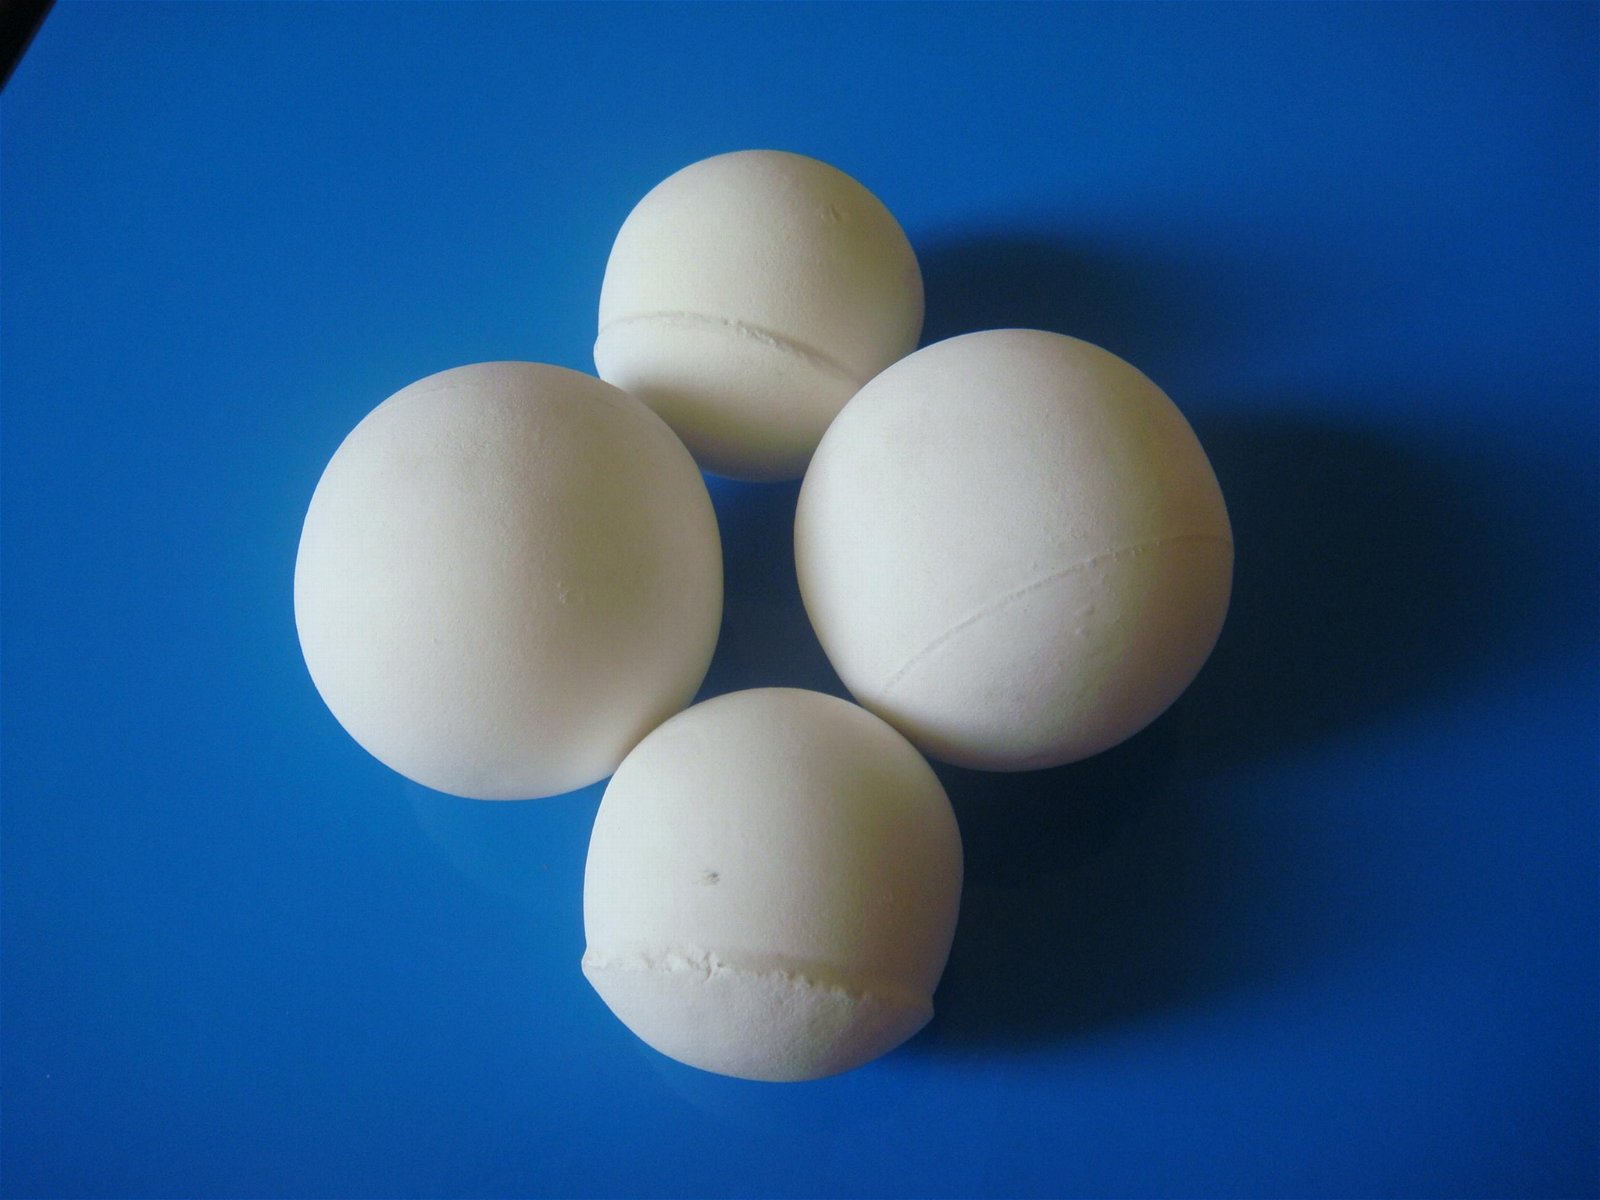  95 white high alumina ceramic grinding balls for ball mill 2